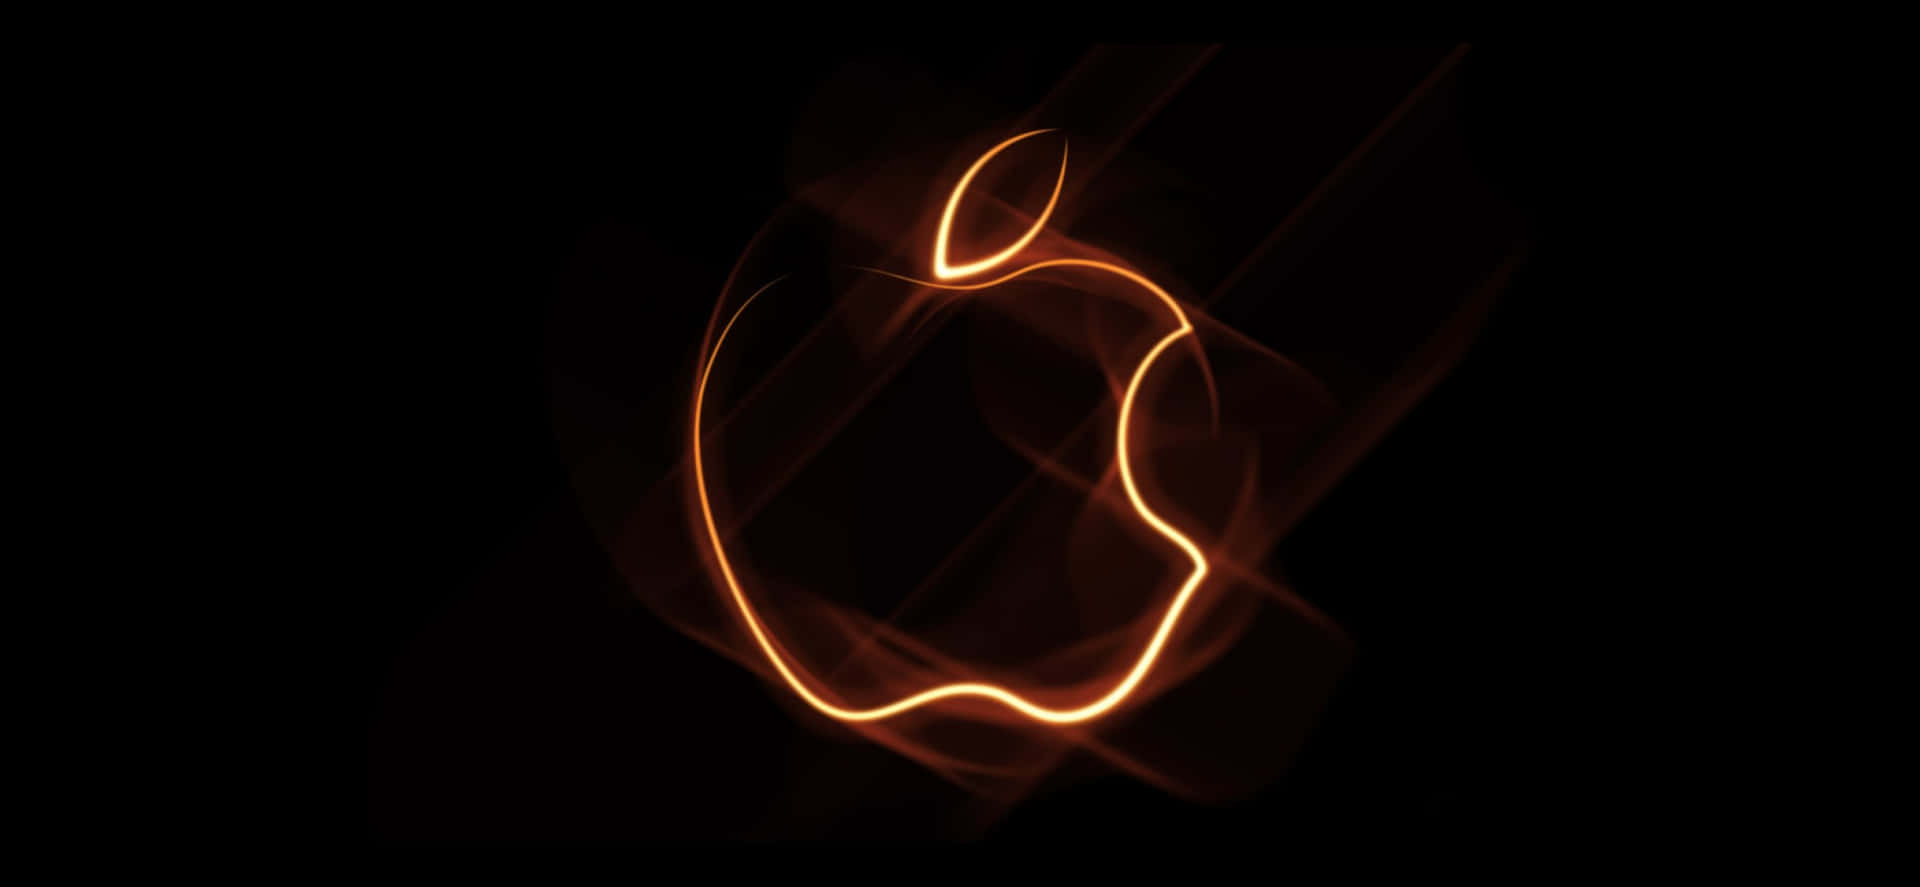 Ellogotipo De Apple Brilla Intensamente En El Iphone X. Fondo de pantalla